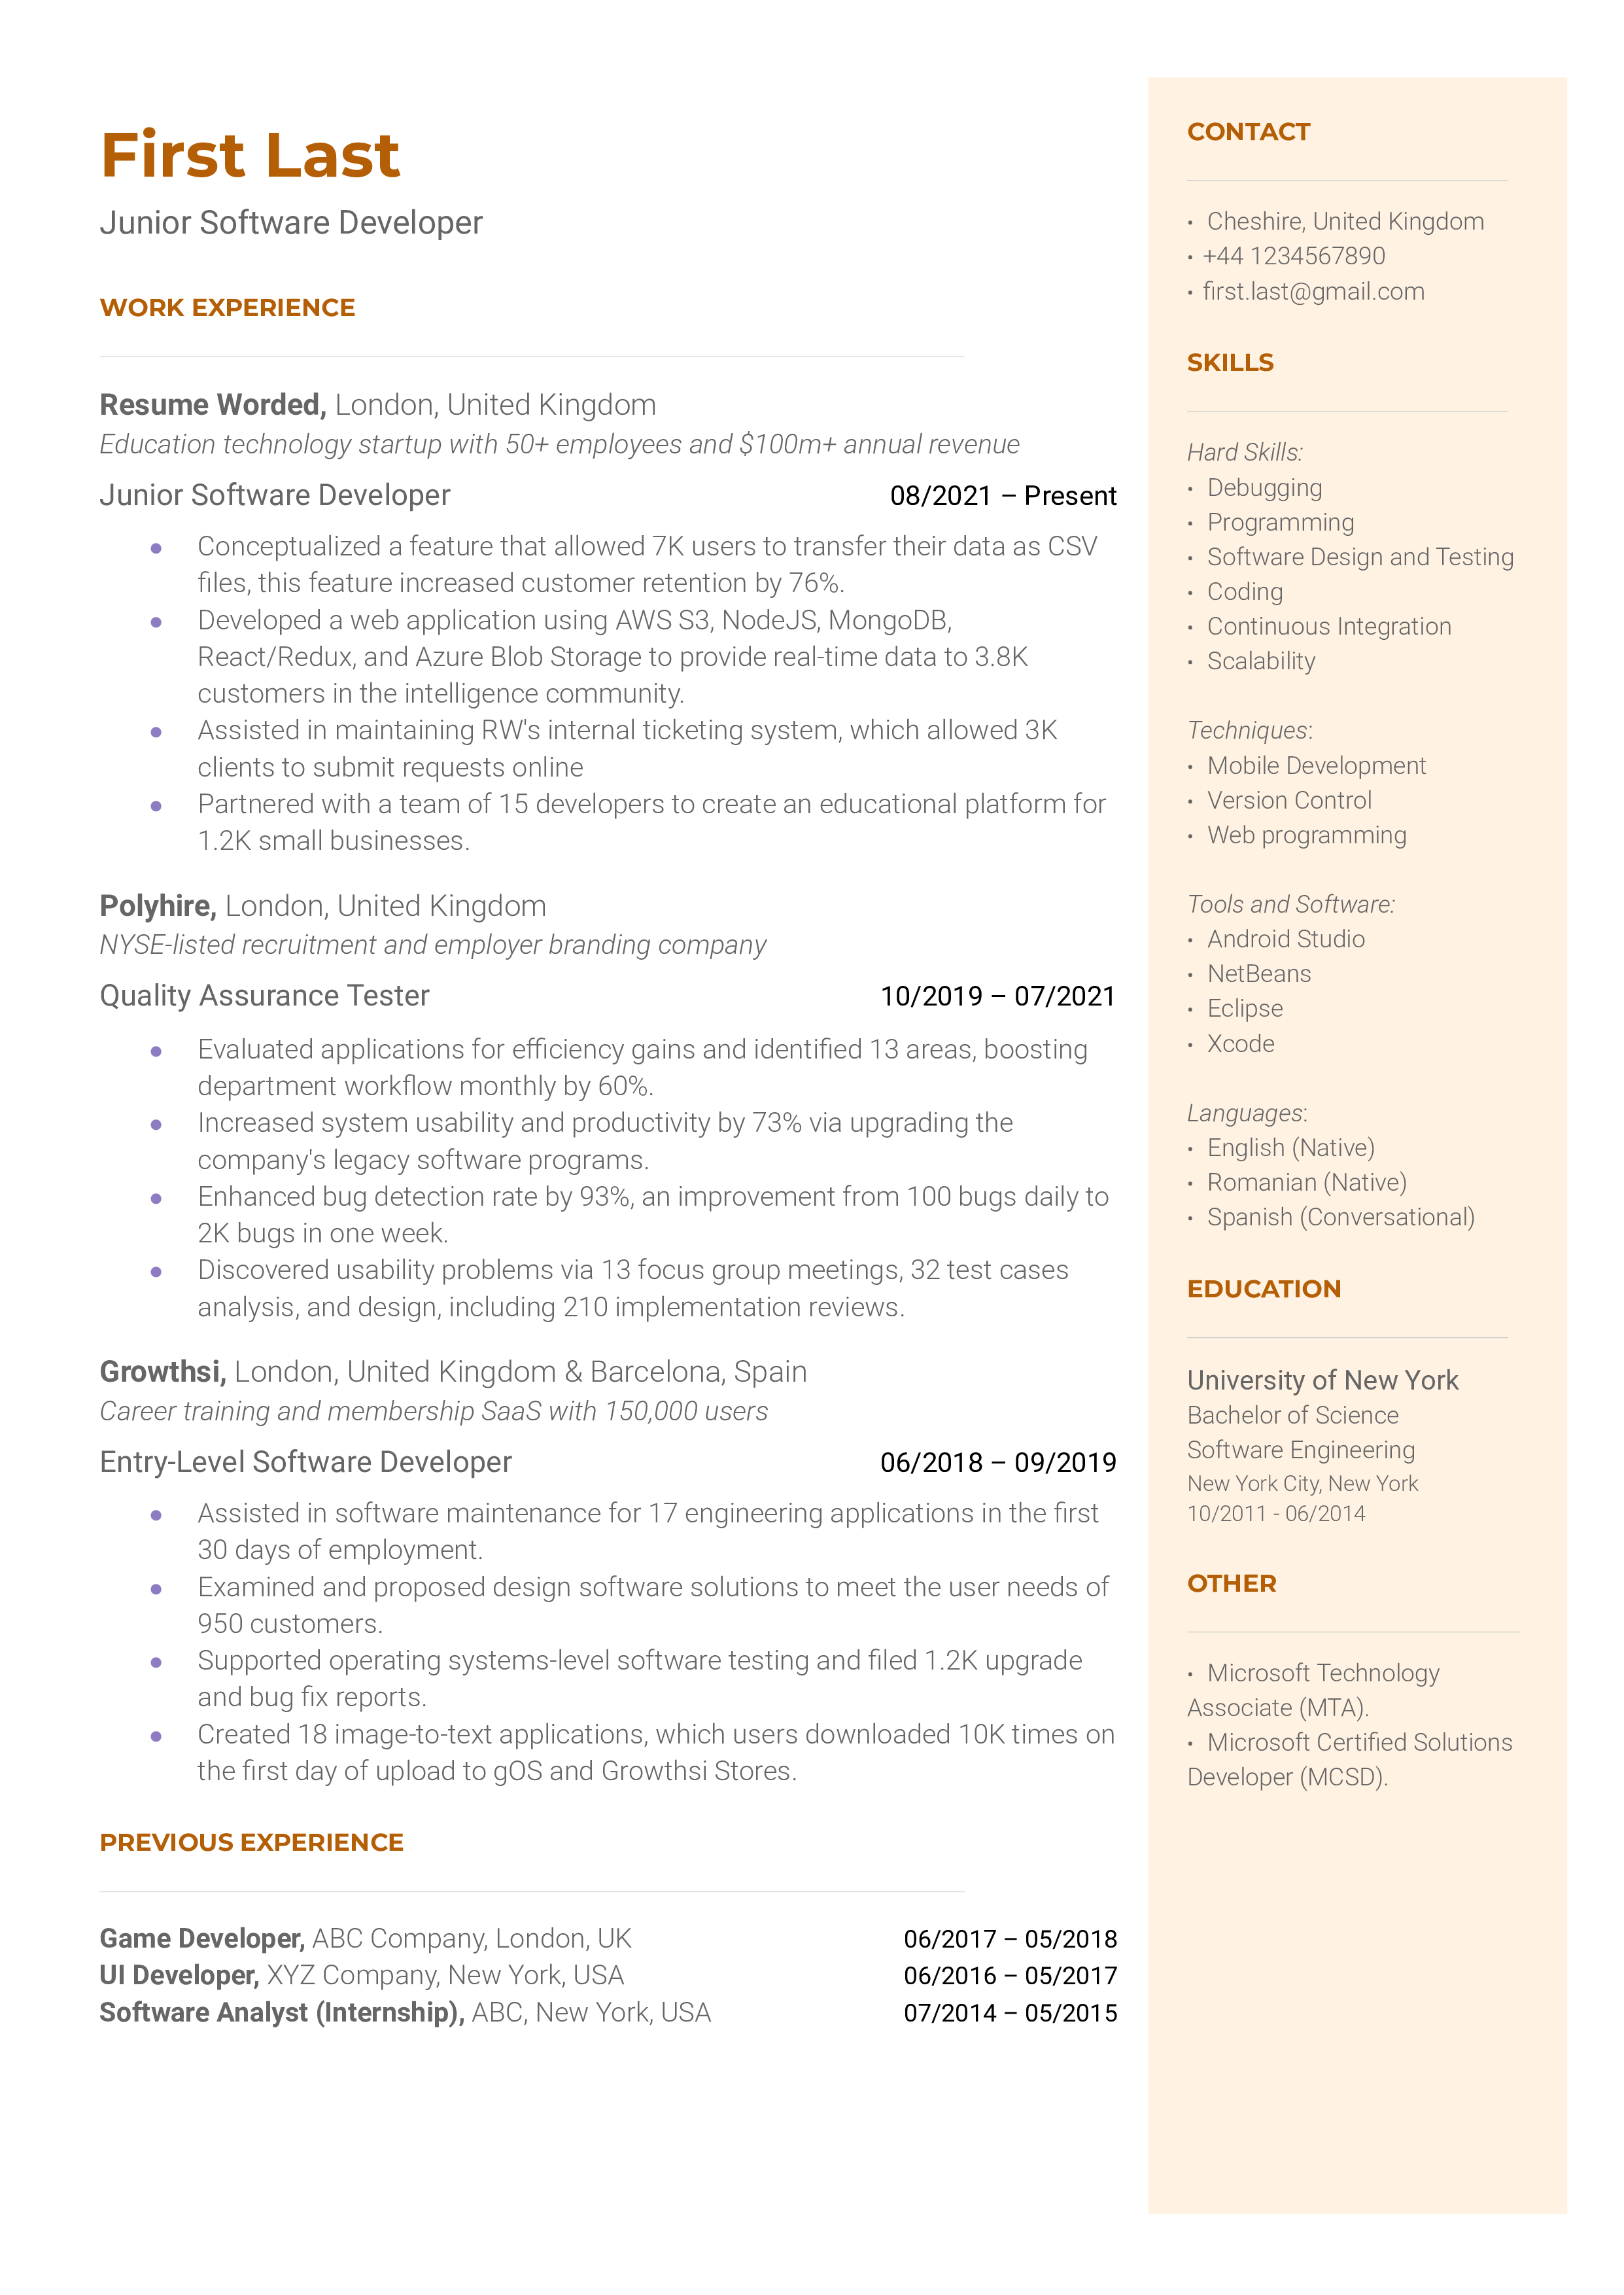 Junior Software Developer Resume Example for 2023 Resume Worded